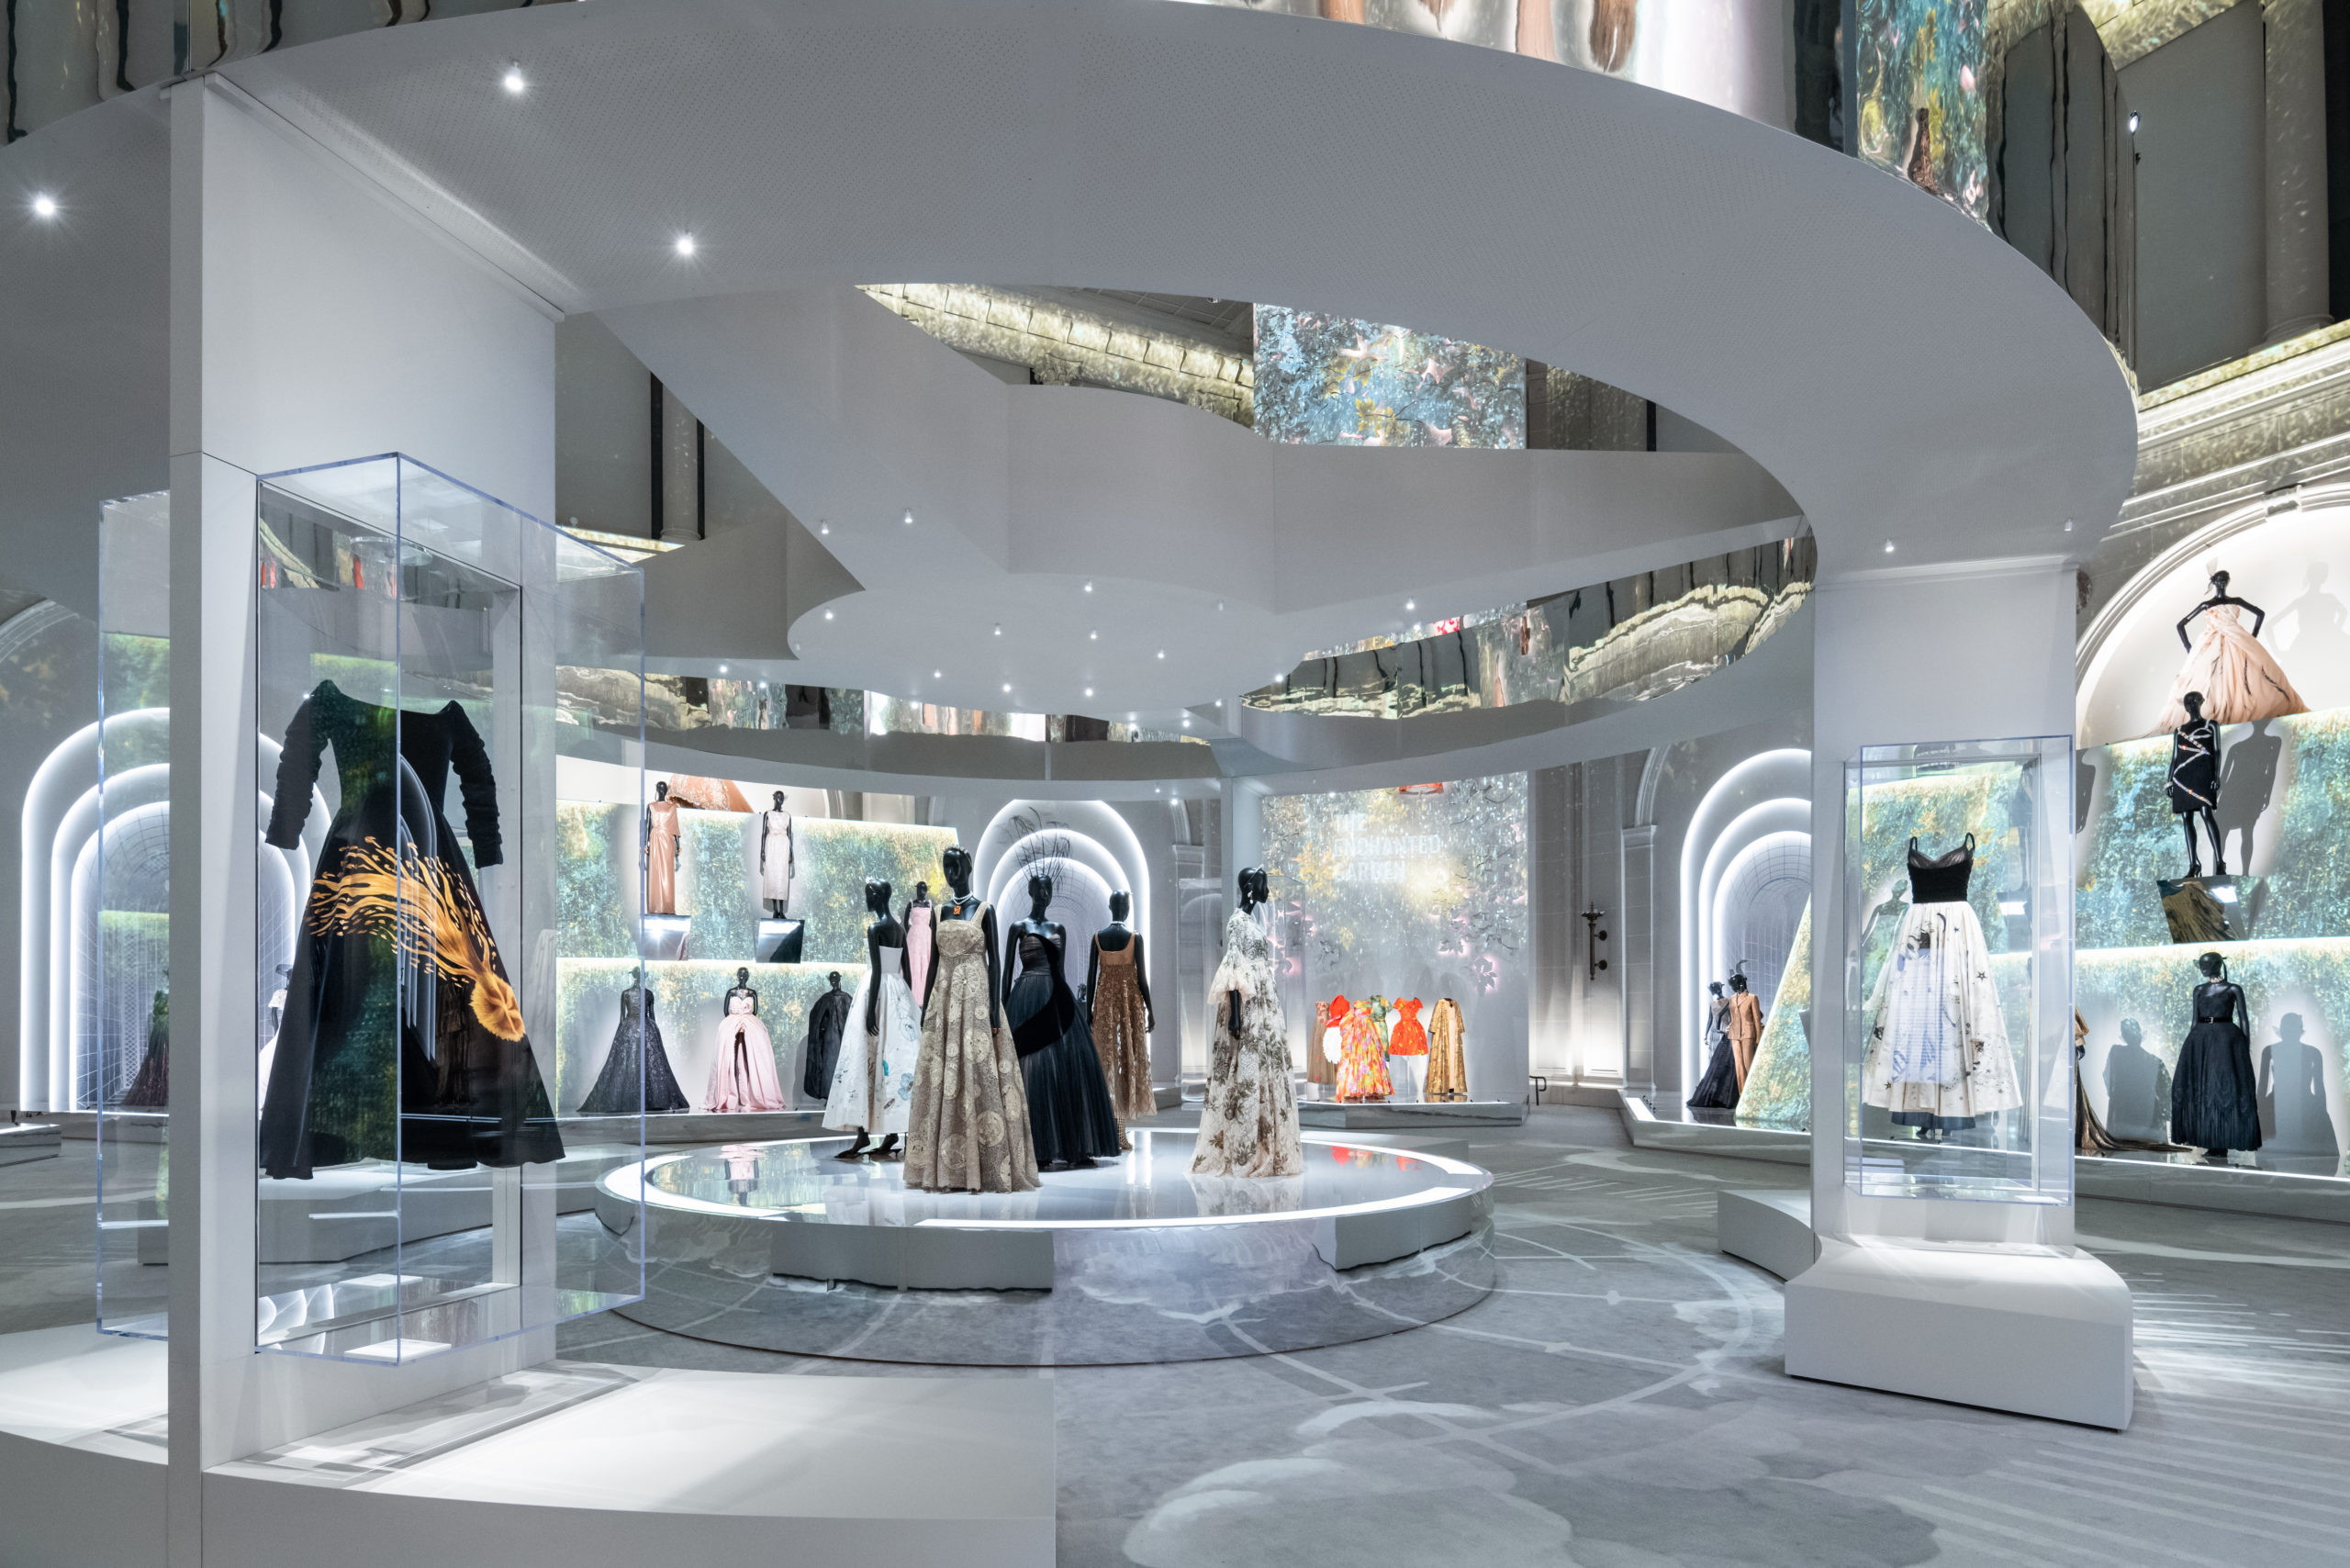 Case Study, Inside the $7 Billion Dior Phenomenon